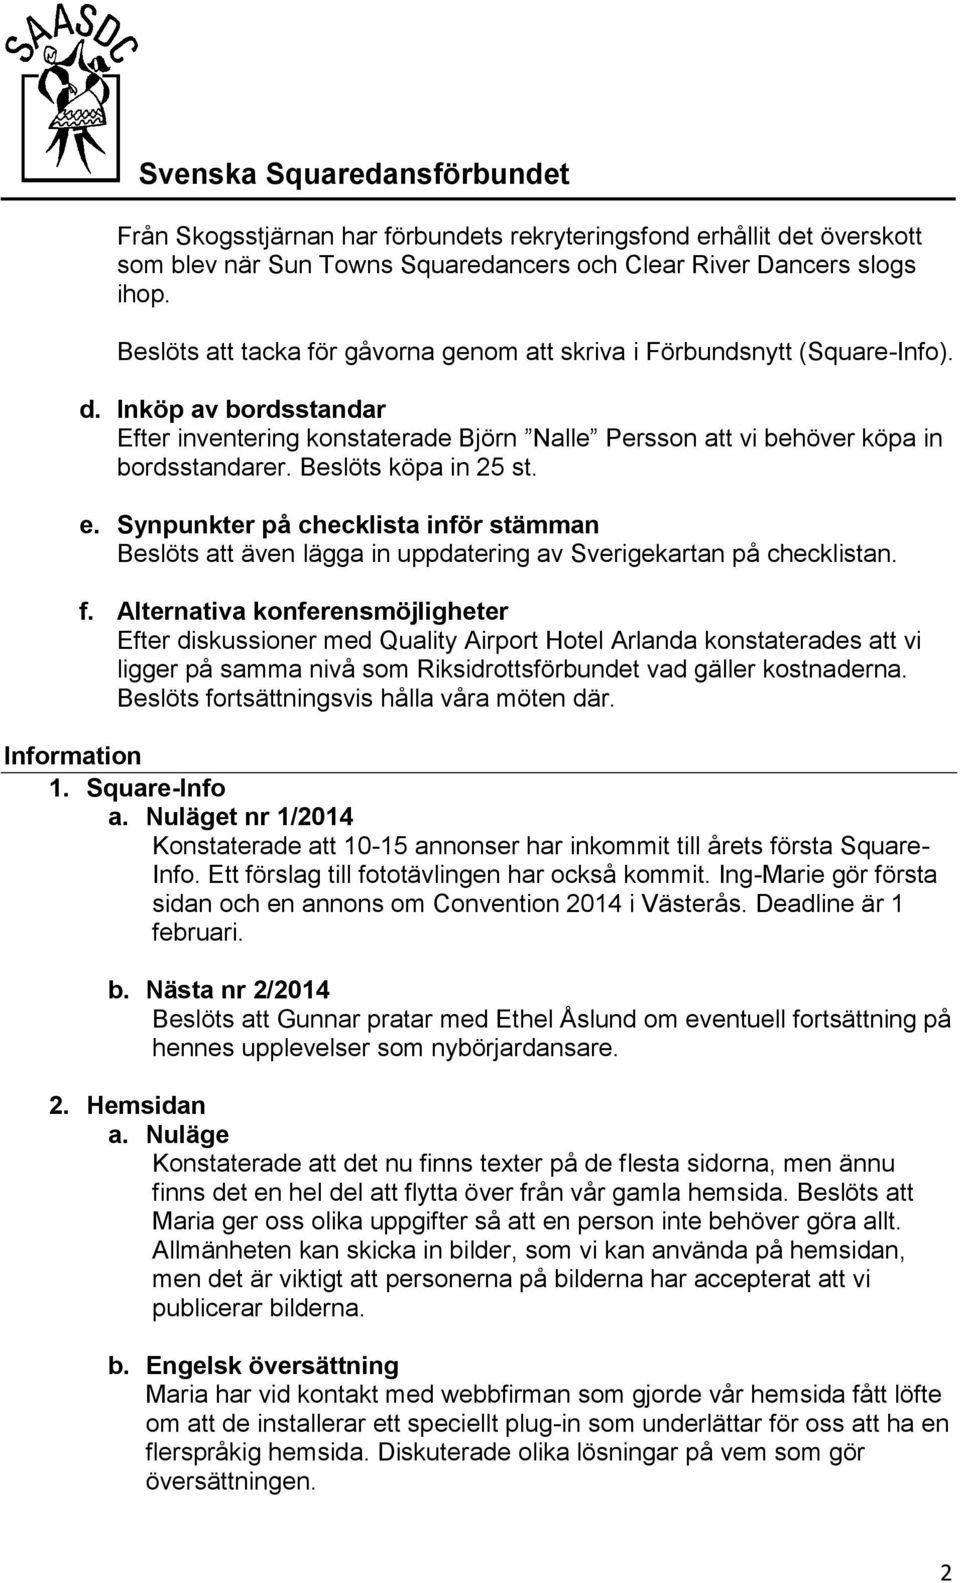 Beslöts köpa in 25 st. e. Synpunkter på checklista inför stämman Beslöts att även lägga in uppdatering av Sverigekartan på checklistan. f.